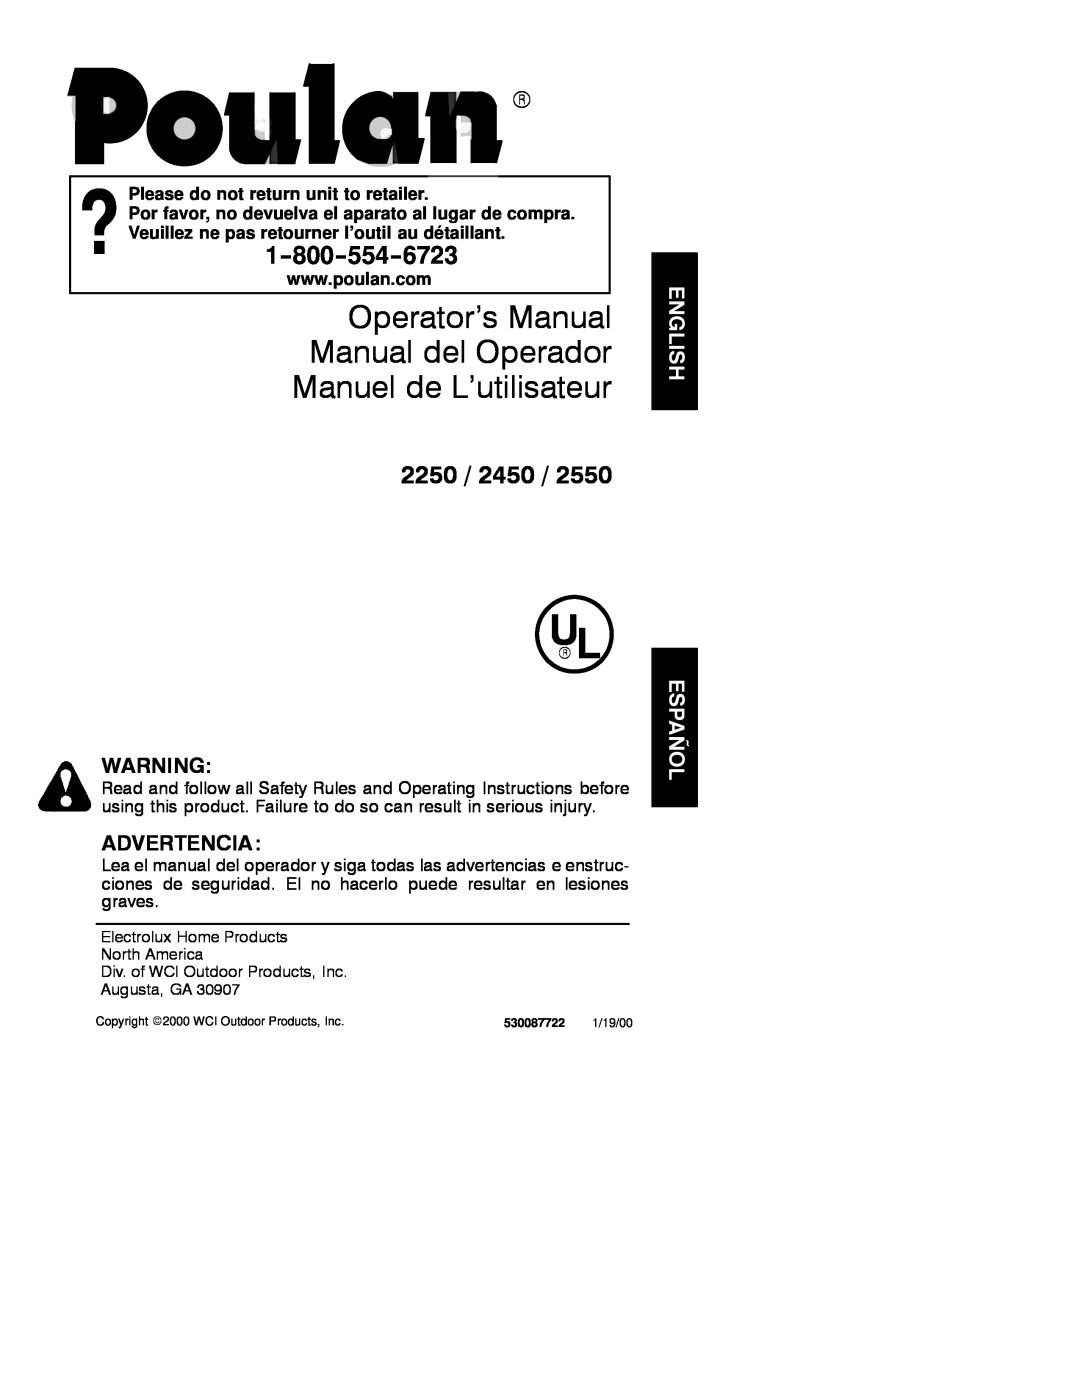 Poulan 2000-01 operating instructions Operator’s Manual Manual del Operador Manuel de L’utilisateur, 2250, Advertencia 